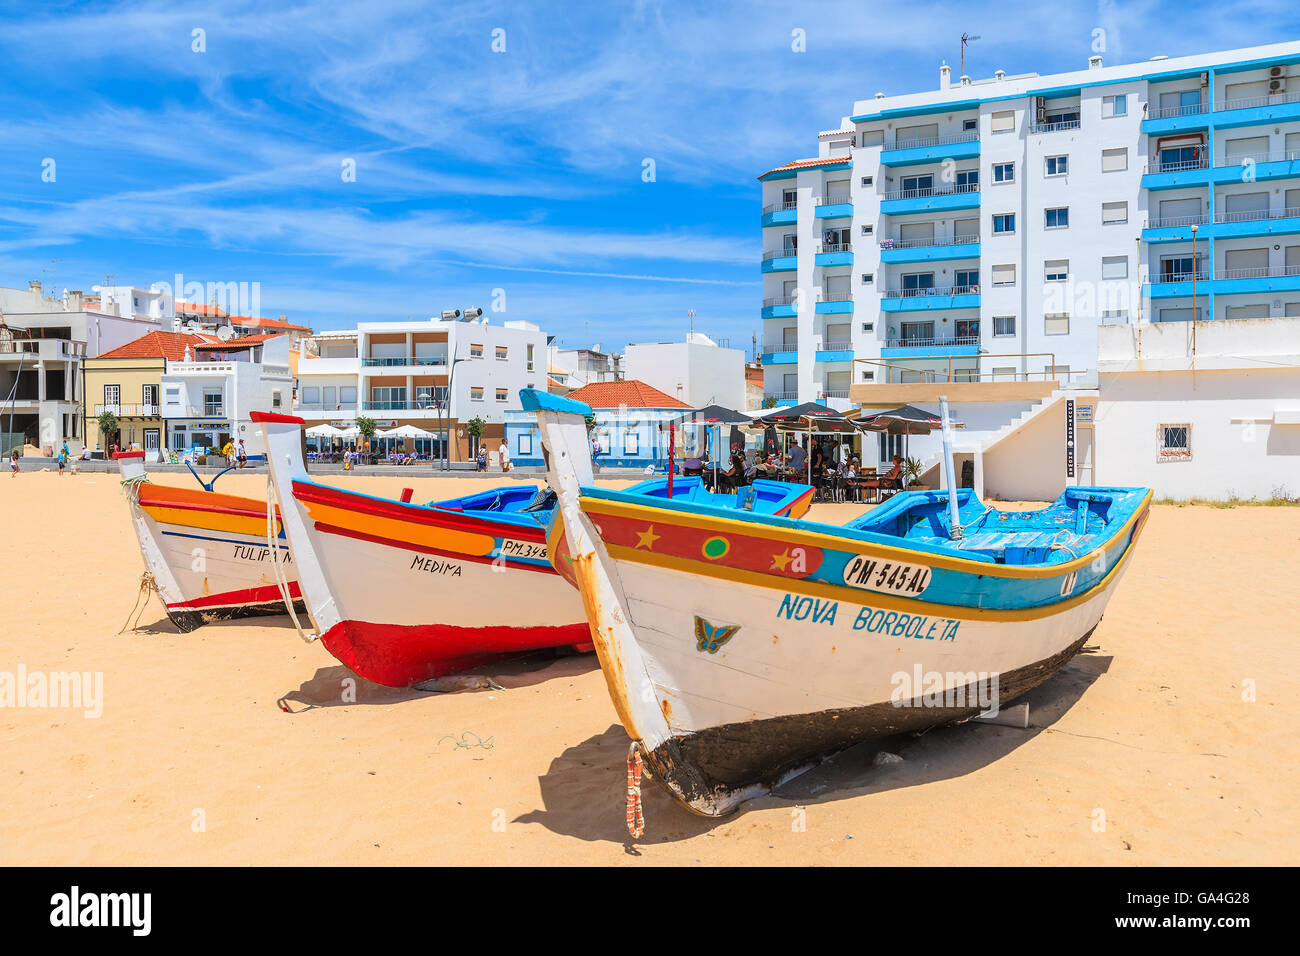 ARMACAO DE PERA Beach, Portogallo - 17 Maggio 2015: tipiche barche di pescatori sulla spiaggia di Armacao de Pera città costiera con appartamento edificio in background. Regione di Algarve è meta di vacanze. Foto Stock